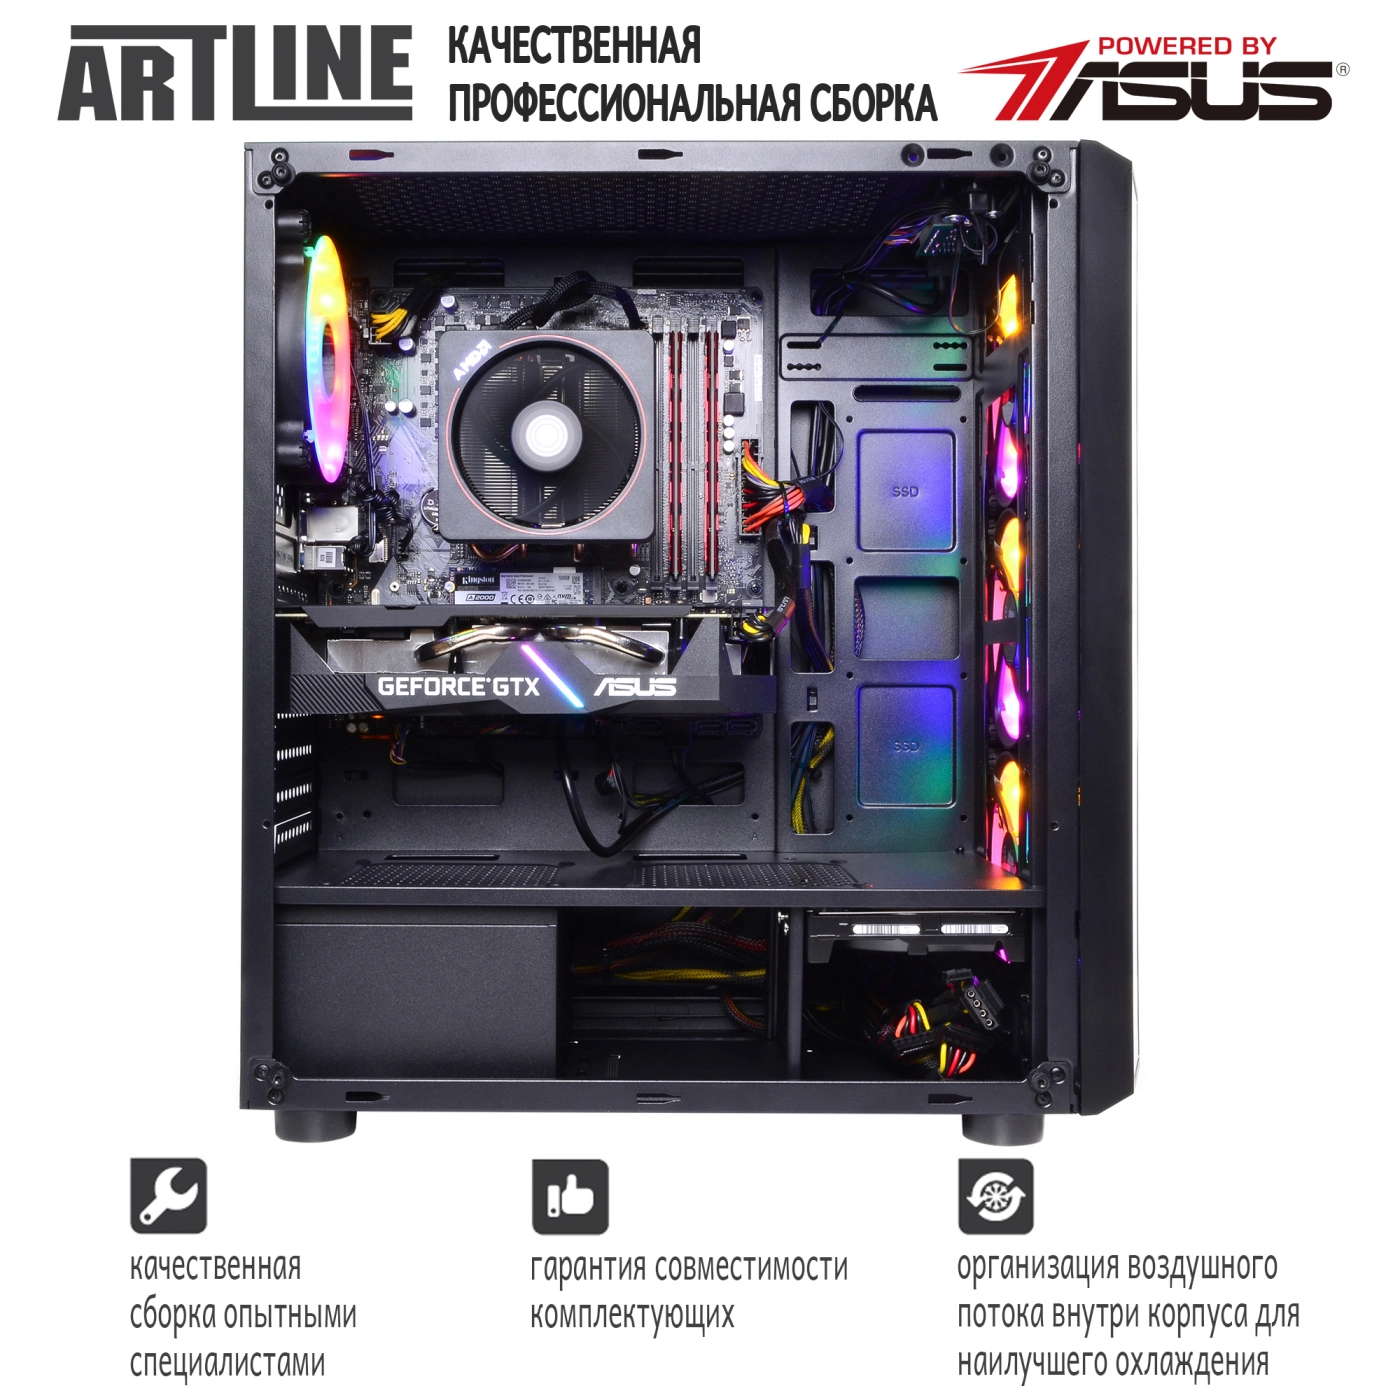 Купить Компьютер ARTLINE Gaming X43v10 - фото 8